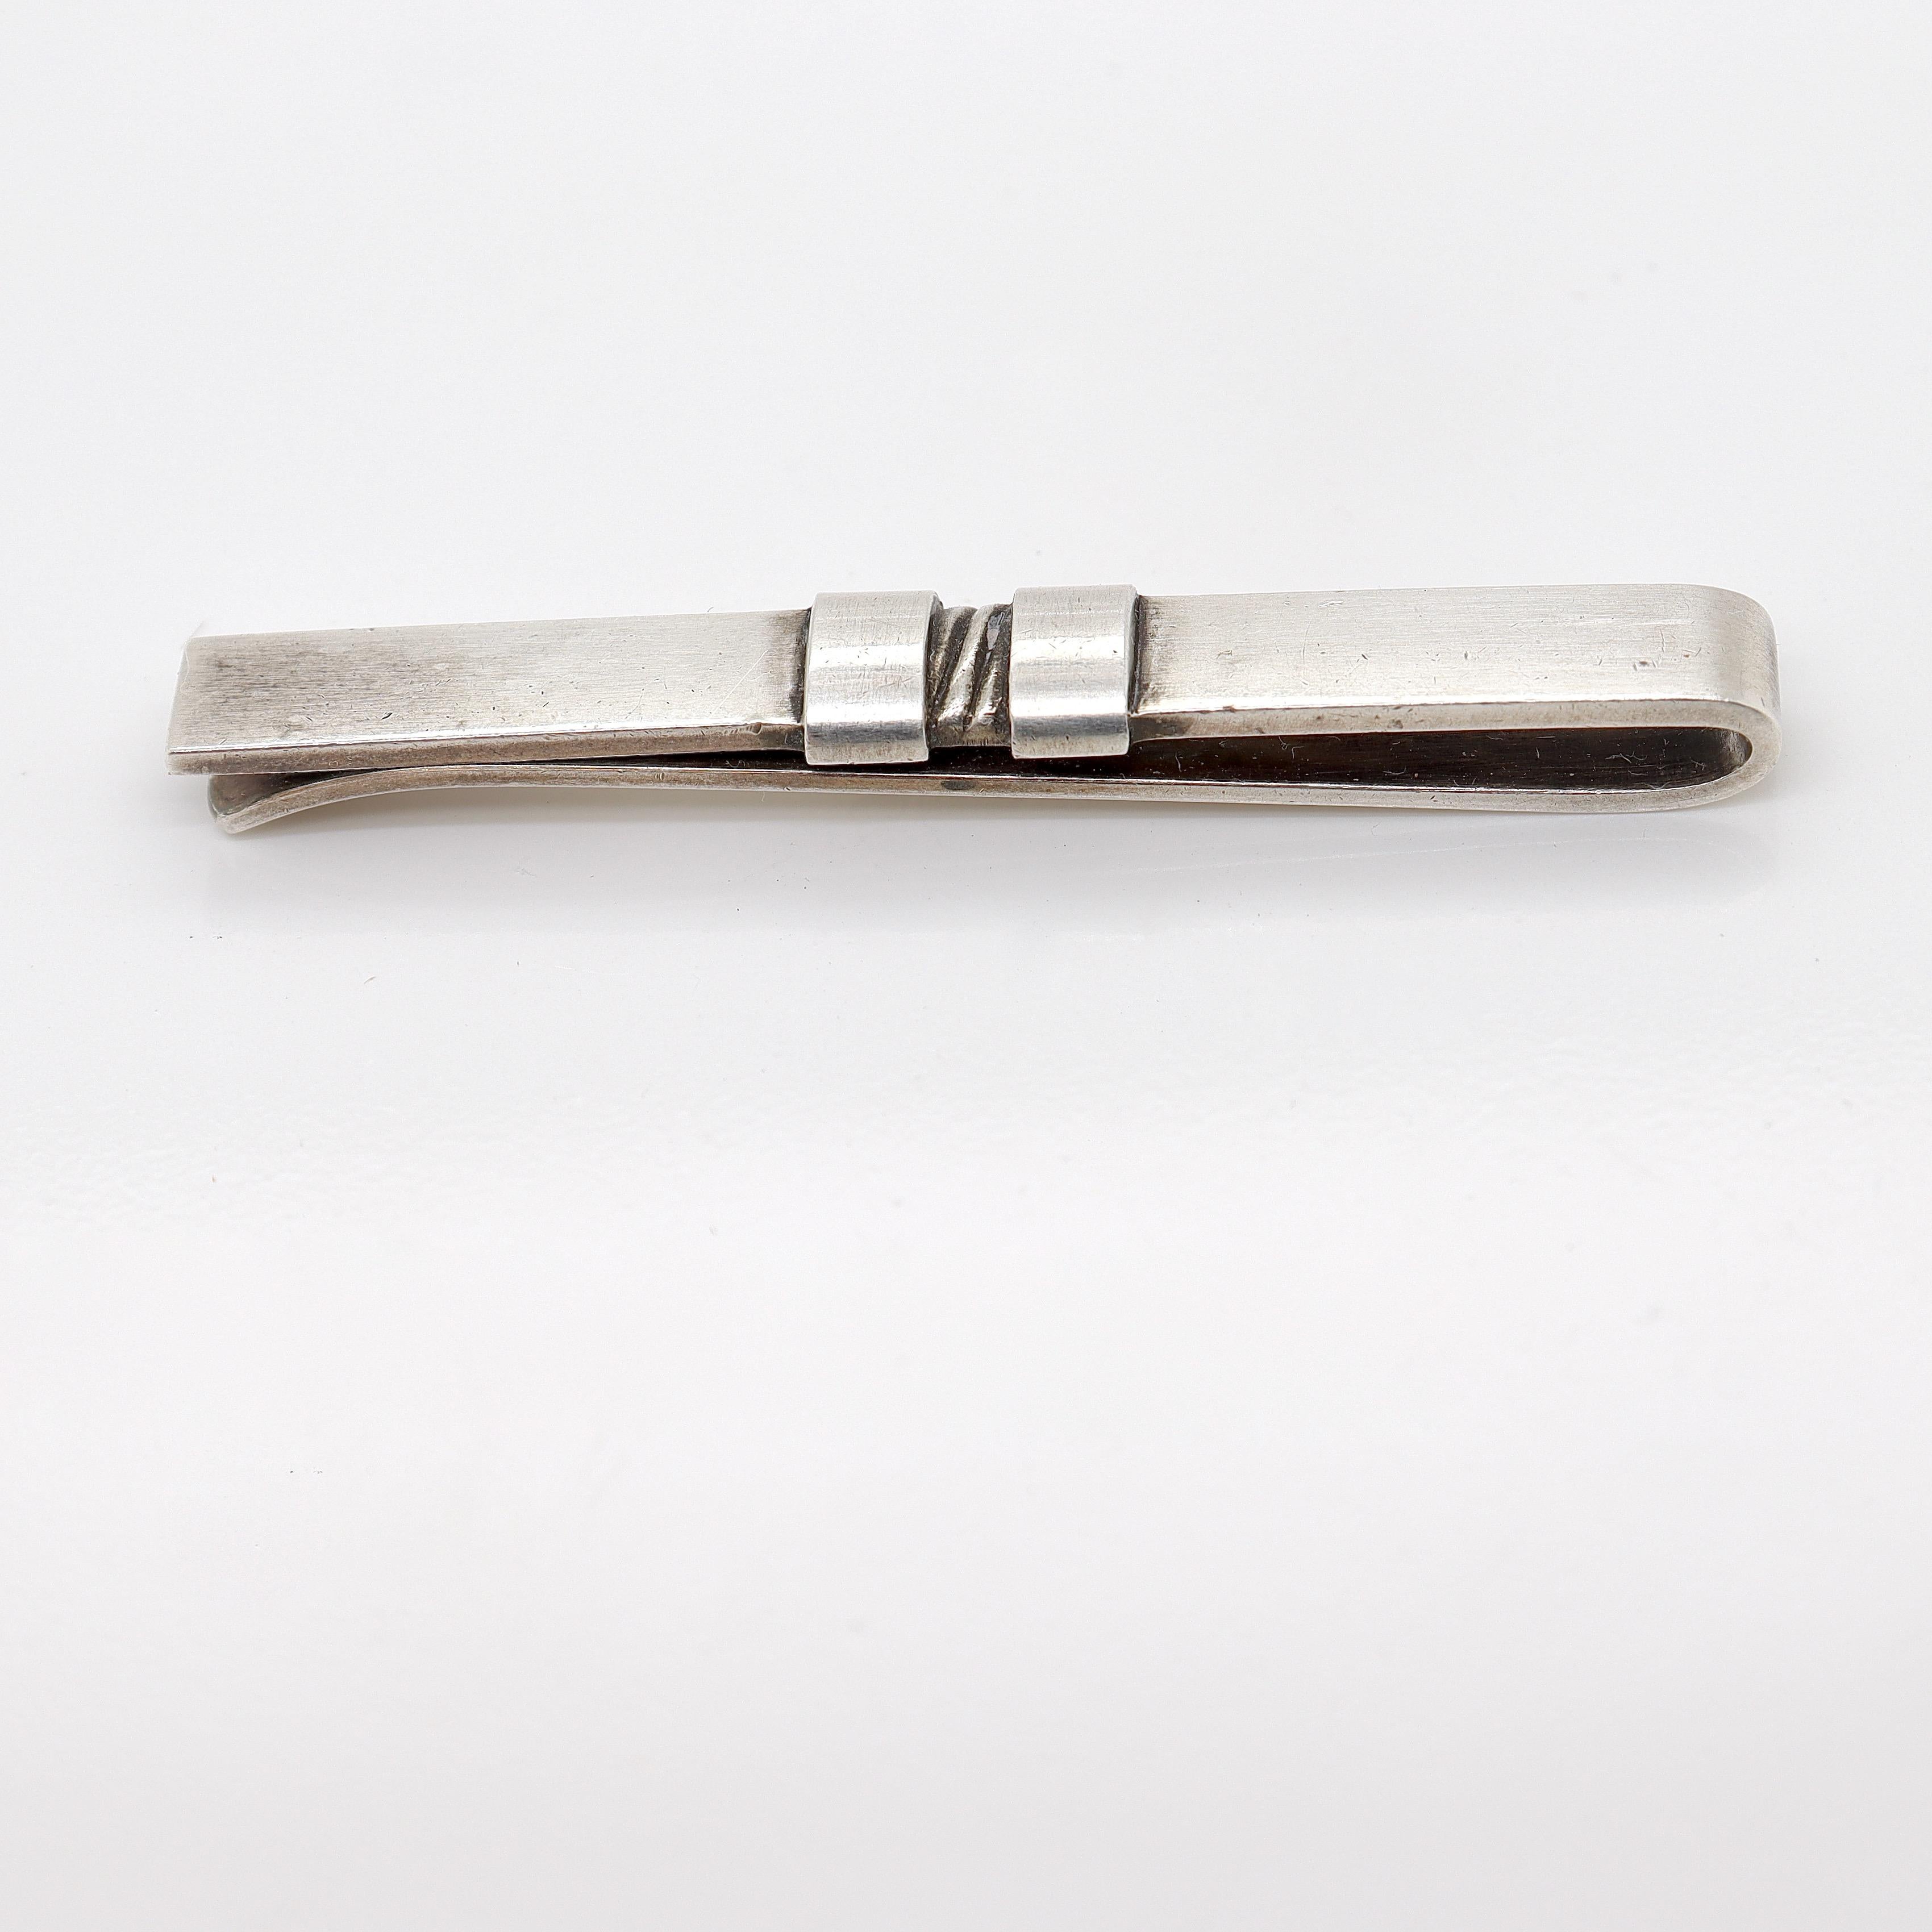 Eine schöne Krawattenklammer aus Sterlingsilber von Georg Jensen. 

Modell Nr. 74.

Entworfen von Sigvard Bernadotte für Georg Jensen um 1953.

Und natürlich kann sie auch als Geldklammer verwendet werden.

Einfach ein wunderbares Stück von einem